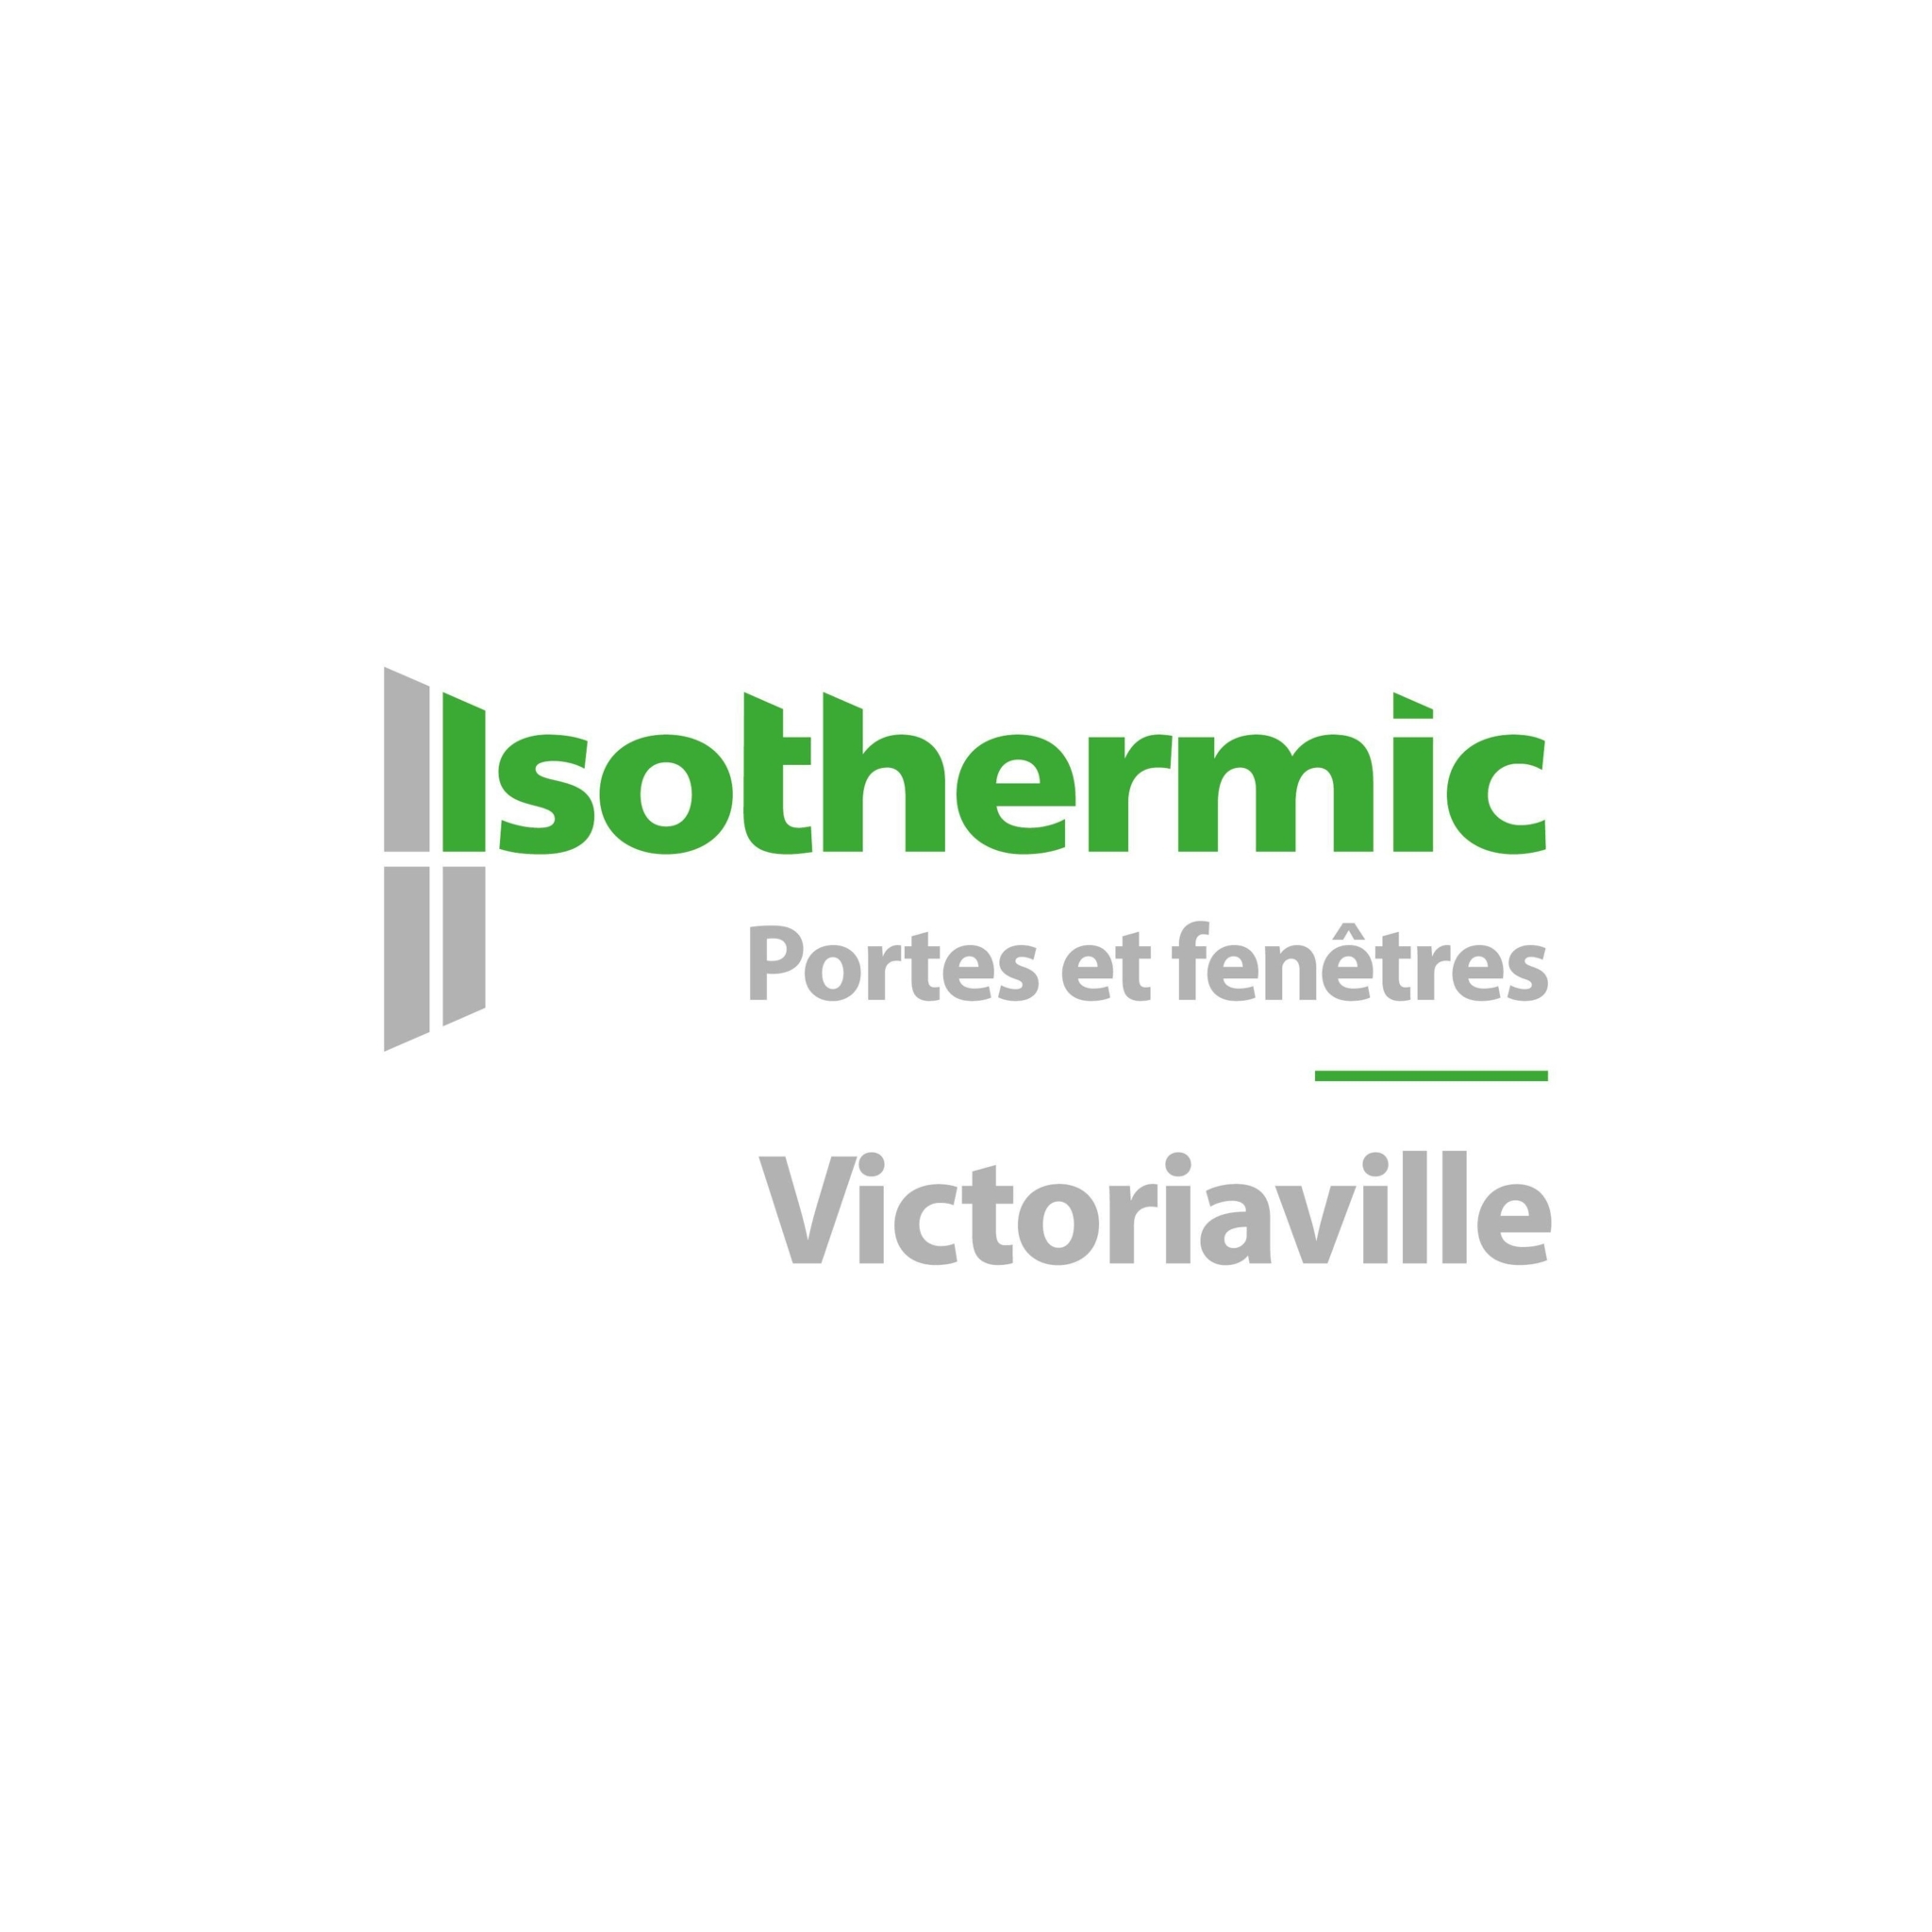 Isothermic portes et fenêtres | Victoriaville - Fenêtres